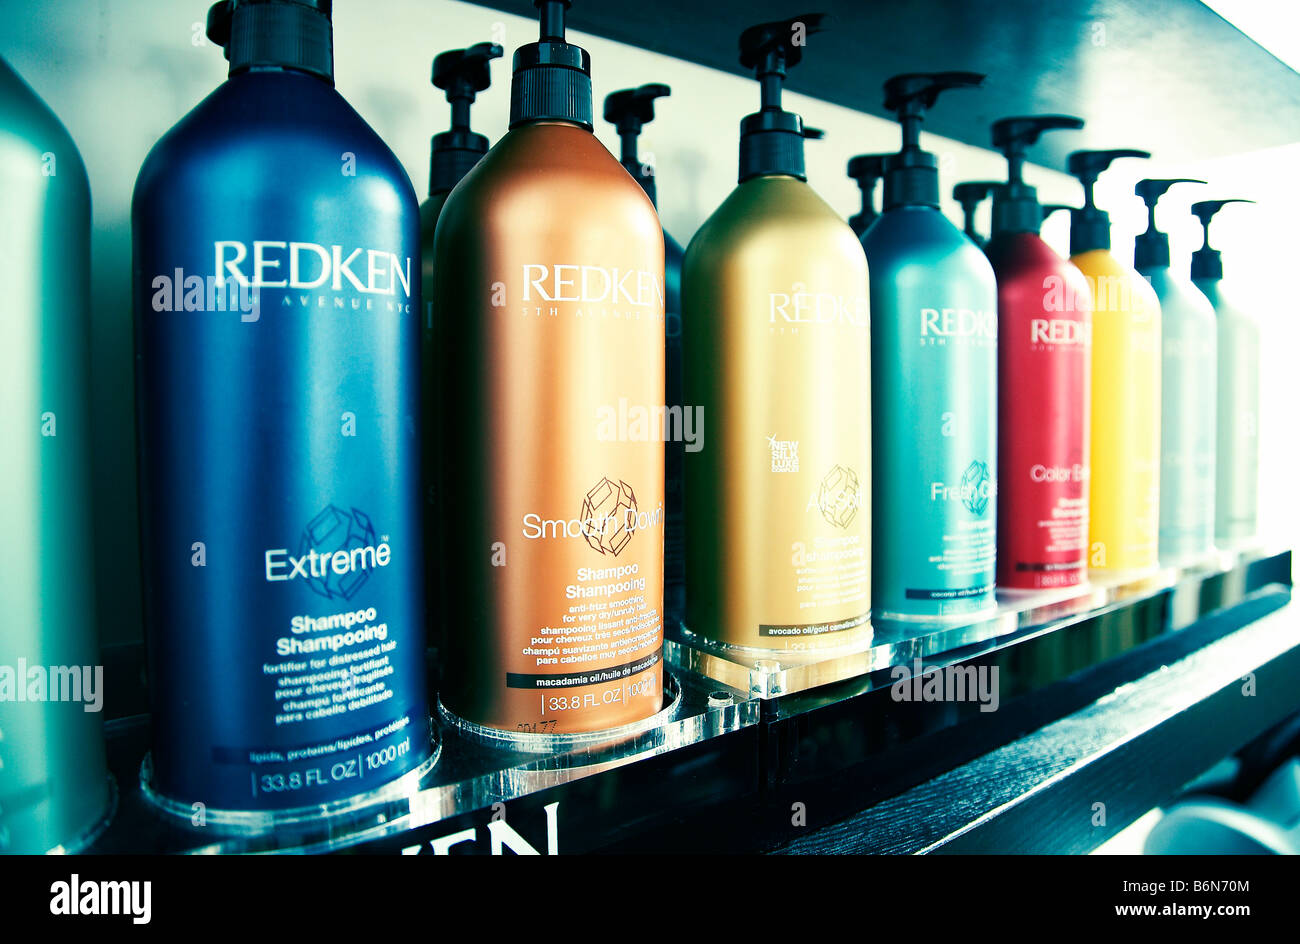 Redken hair care products immagini e fotografie stock ad alta risoluzione -  Alamy